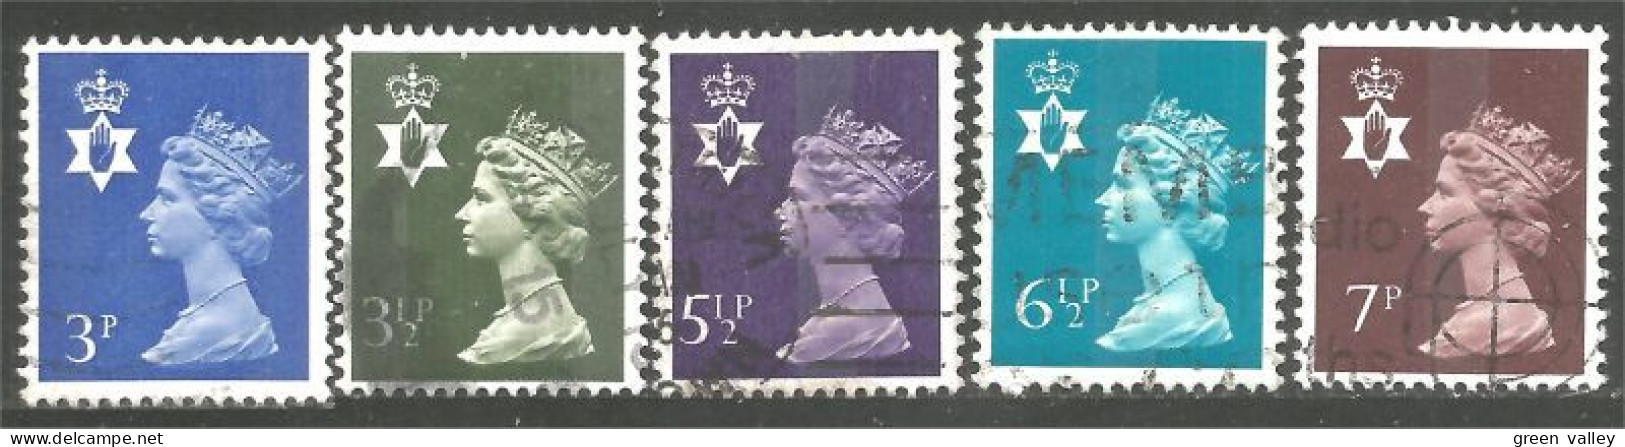 414 G-B Regionals Northern Ireland 5 Stamps Queen Elizabeth (REG-29) - Irlanda Del Norte